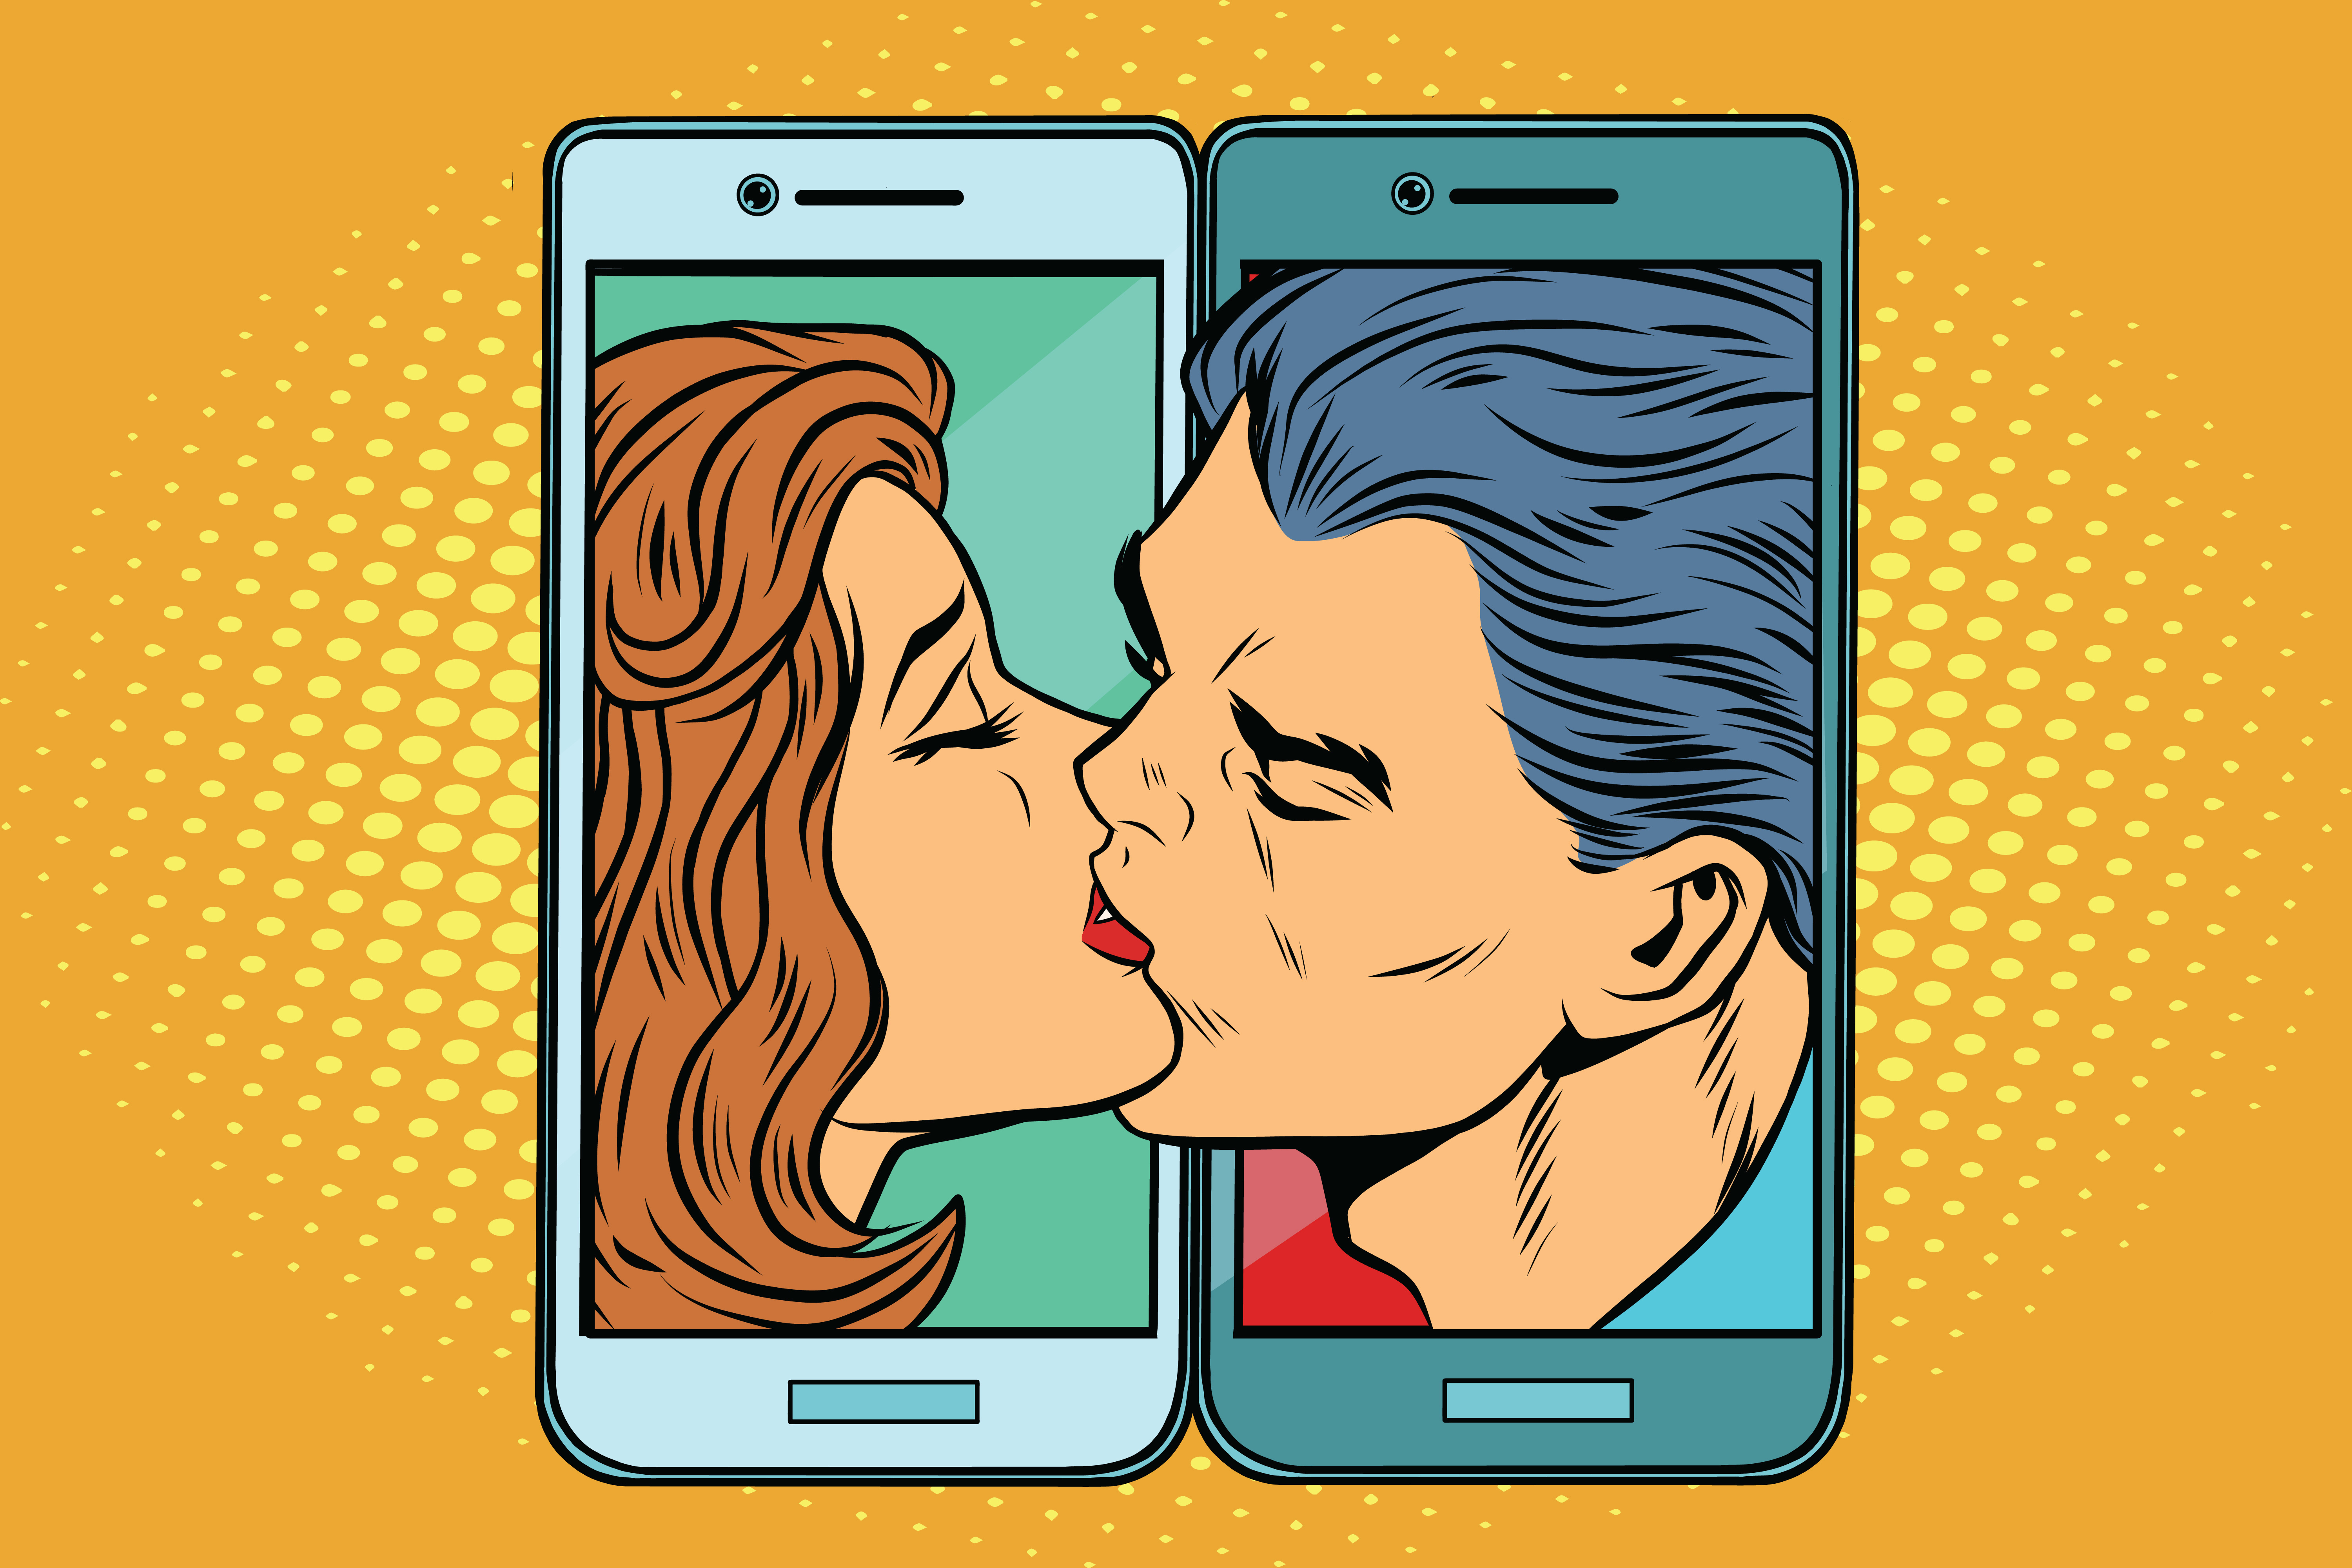 Seks, pieniądze i oszustwa. Internetowe randki to żyła złota i spore ryzyko  - Społeczeństwo - Newsweek.pl